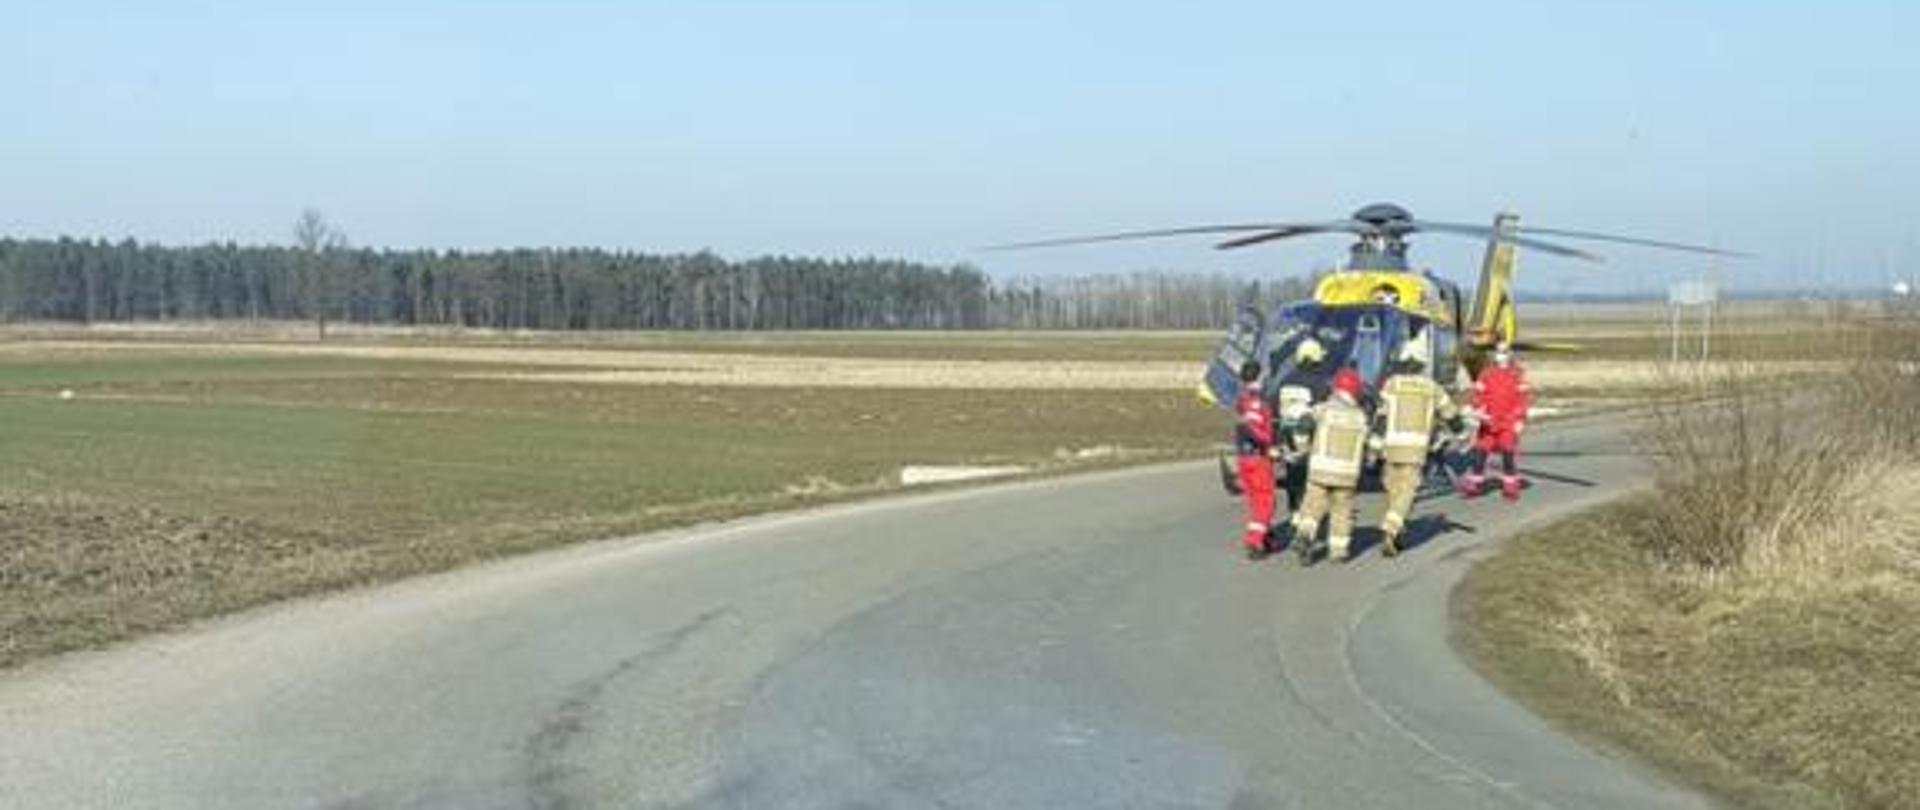 Śmigłowiec LPR na drodze, przed śmigłowcem strażacy i obsługa śmigłowca.